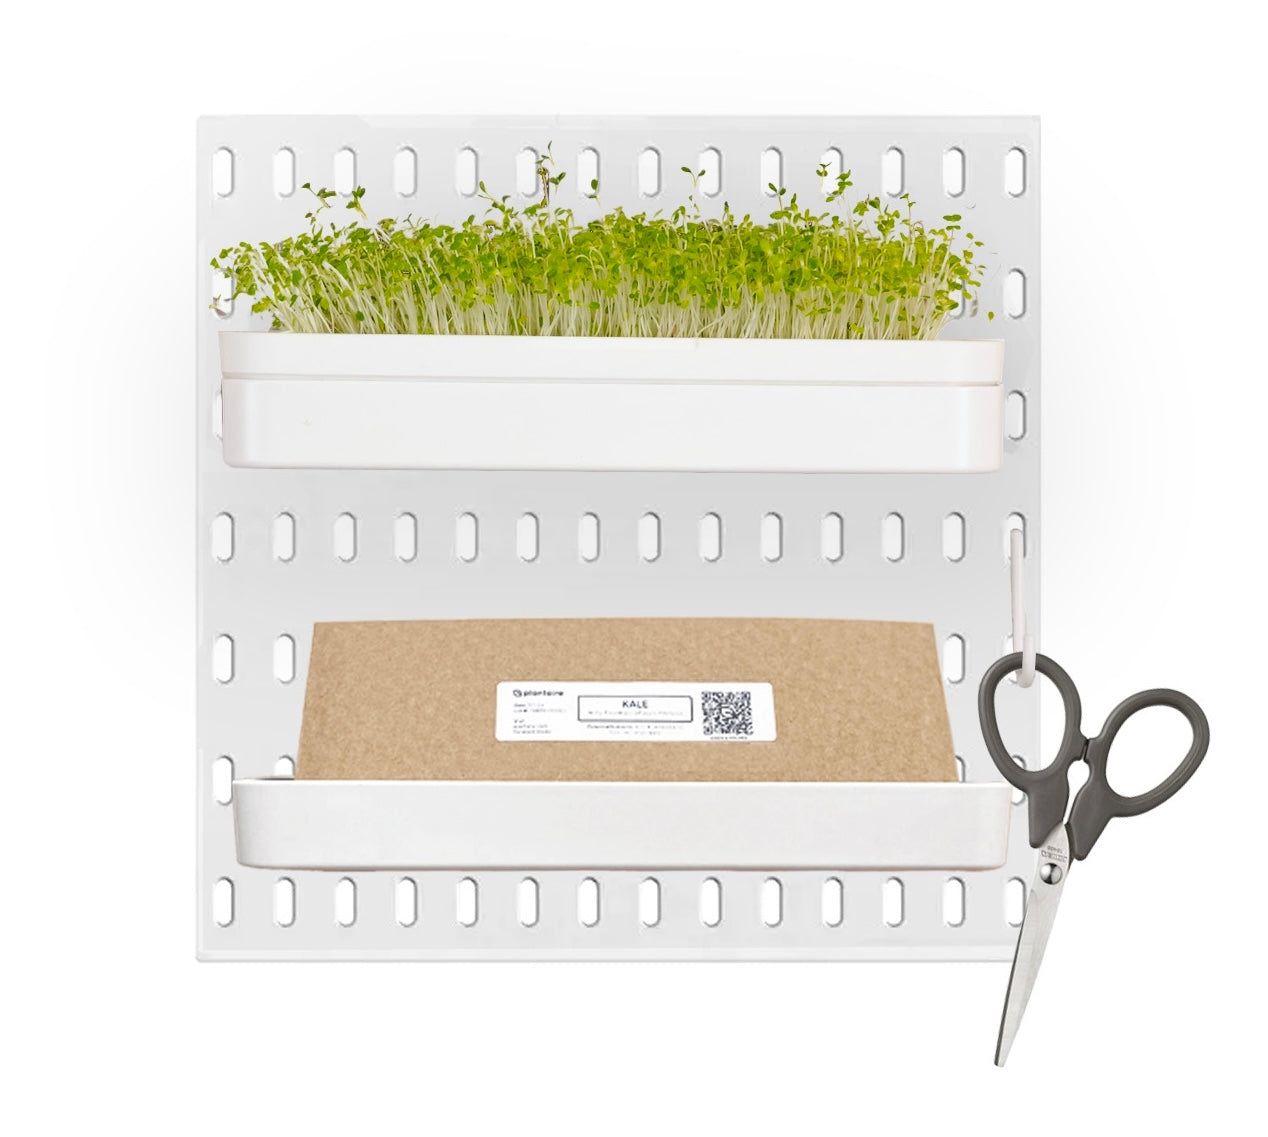 Mini Peg - Modular Garden System - Starter Kit